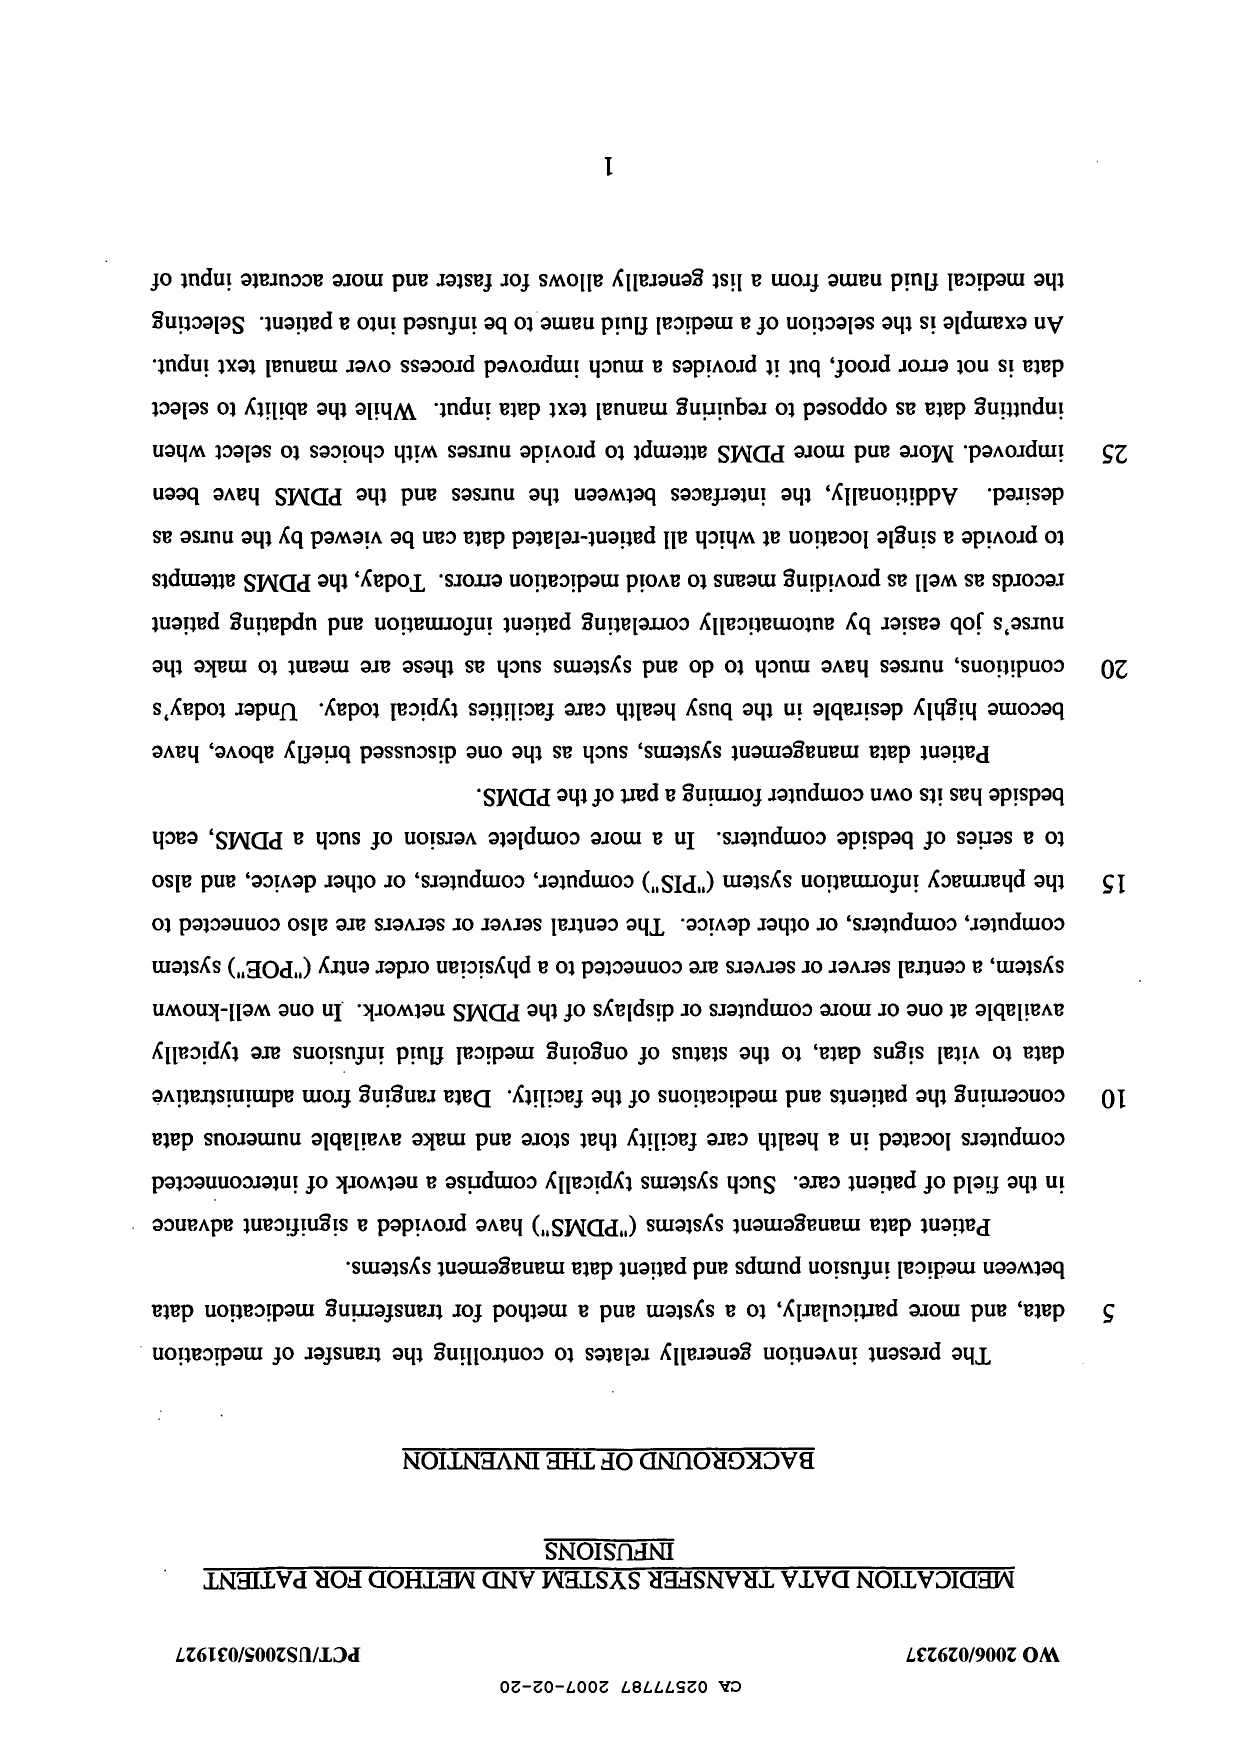 Canadian Patent Document 2577787. Description 20061220. Image 1 of 21